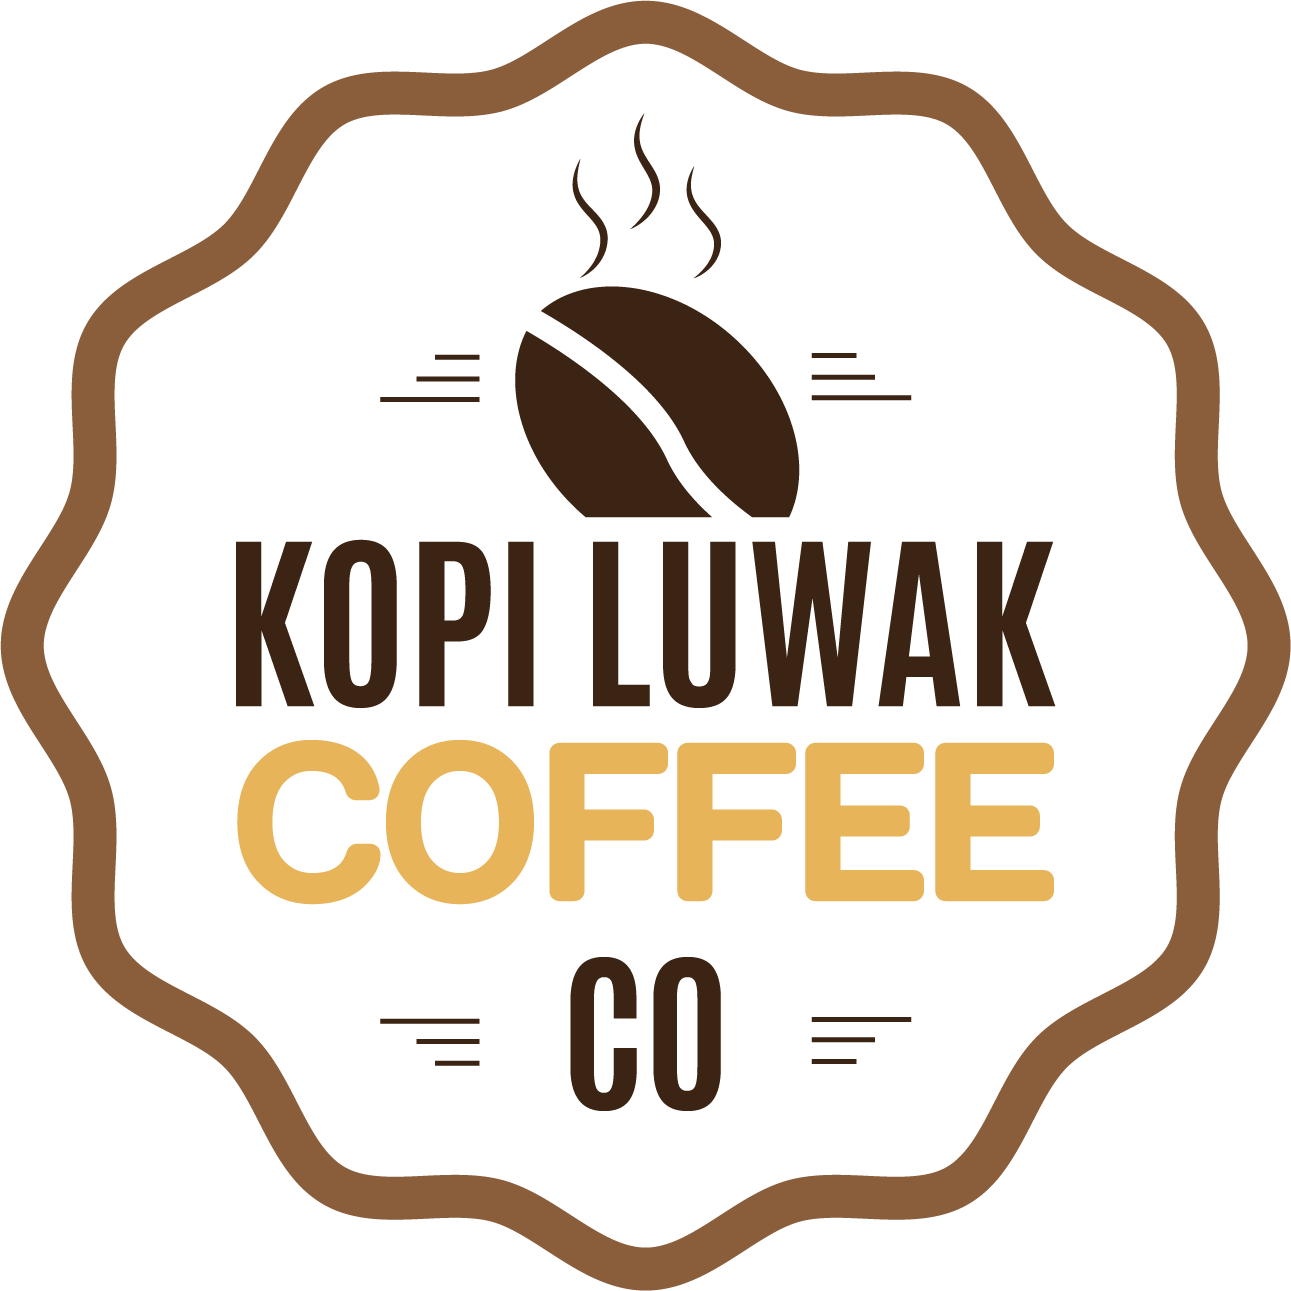 Kopi Luwak Coffee Co